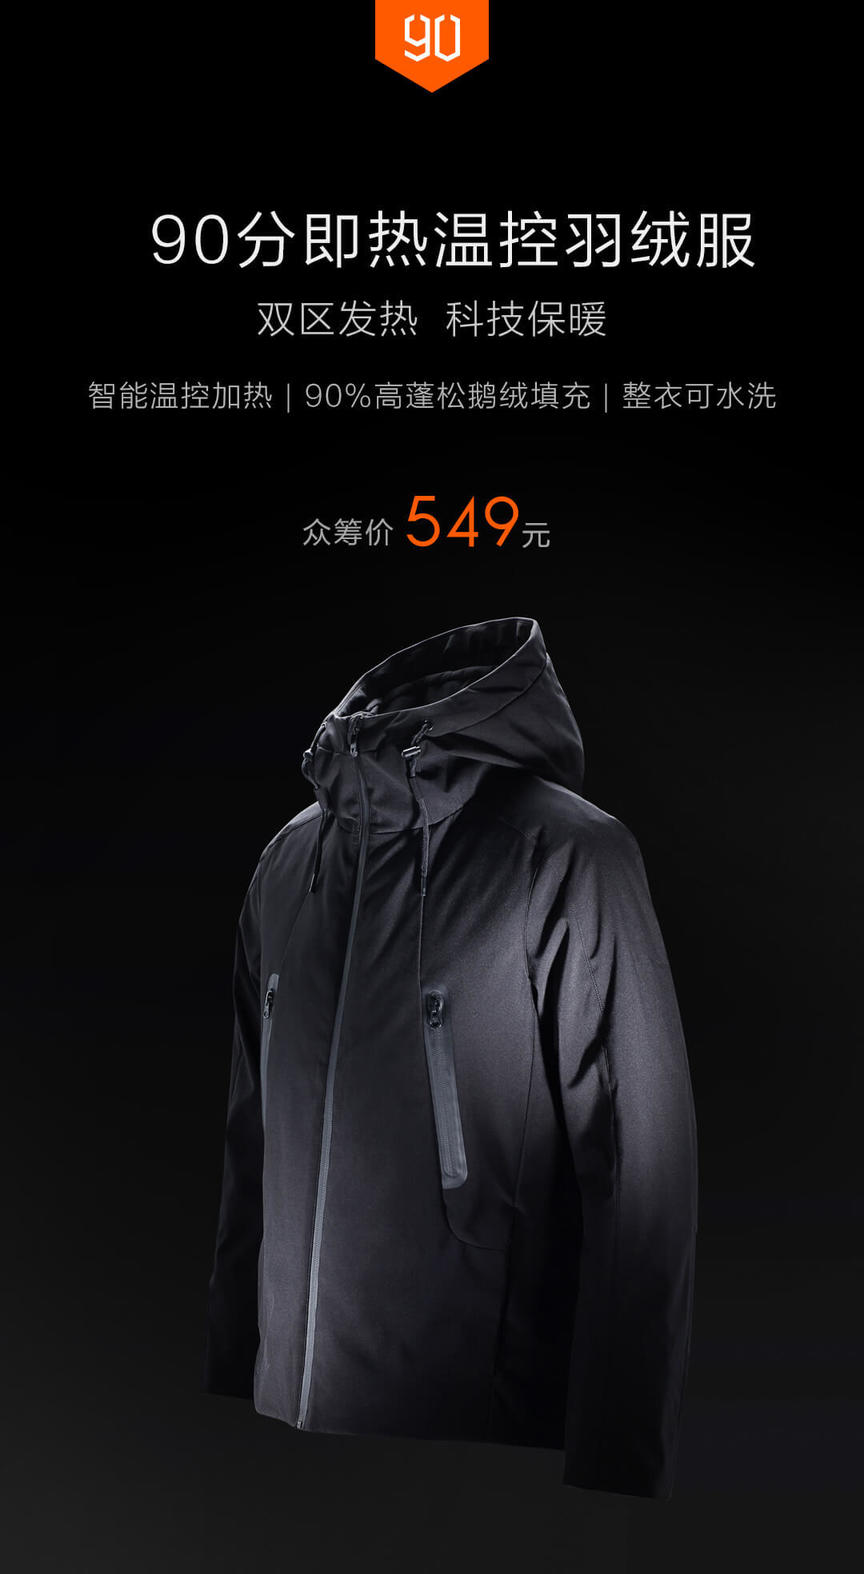 Xiaomi сделал ВСЕсезонную куртку за USD80 - и она восхитительна! Умная куртка, будущее уже здесь.